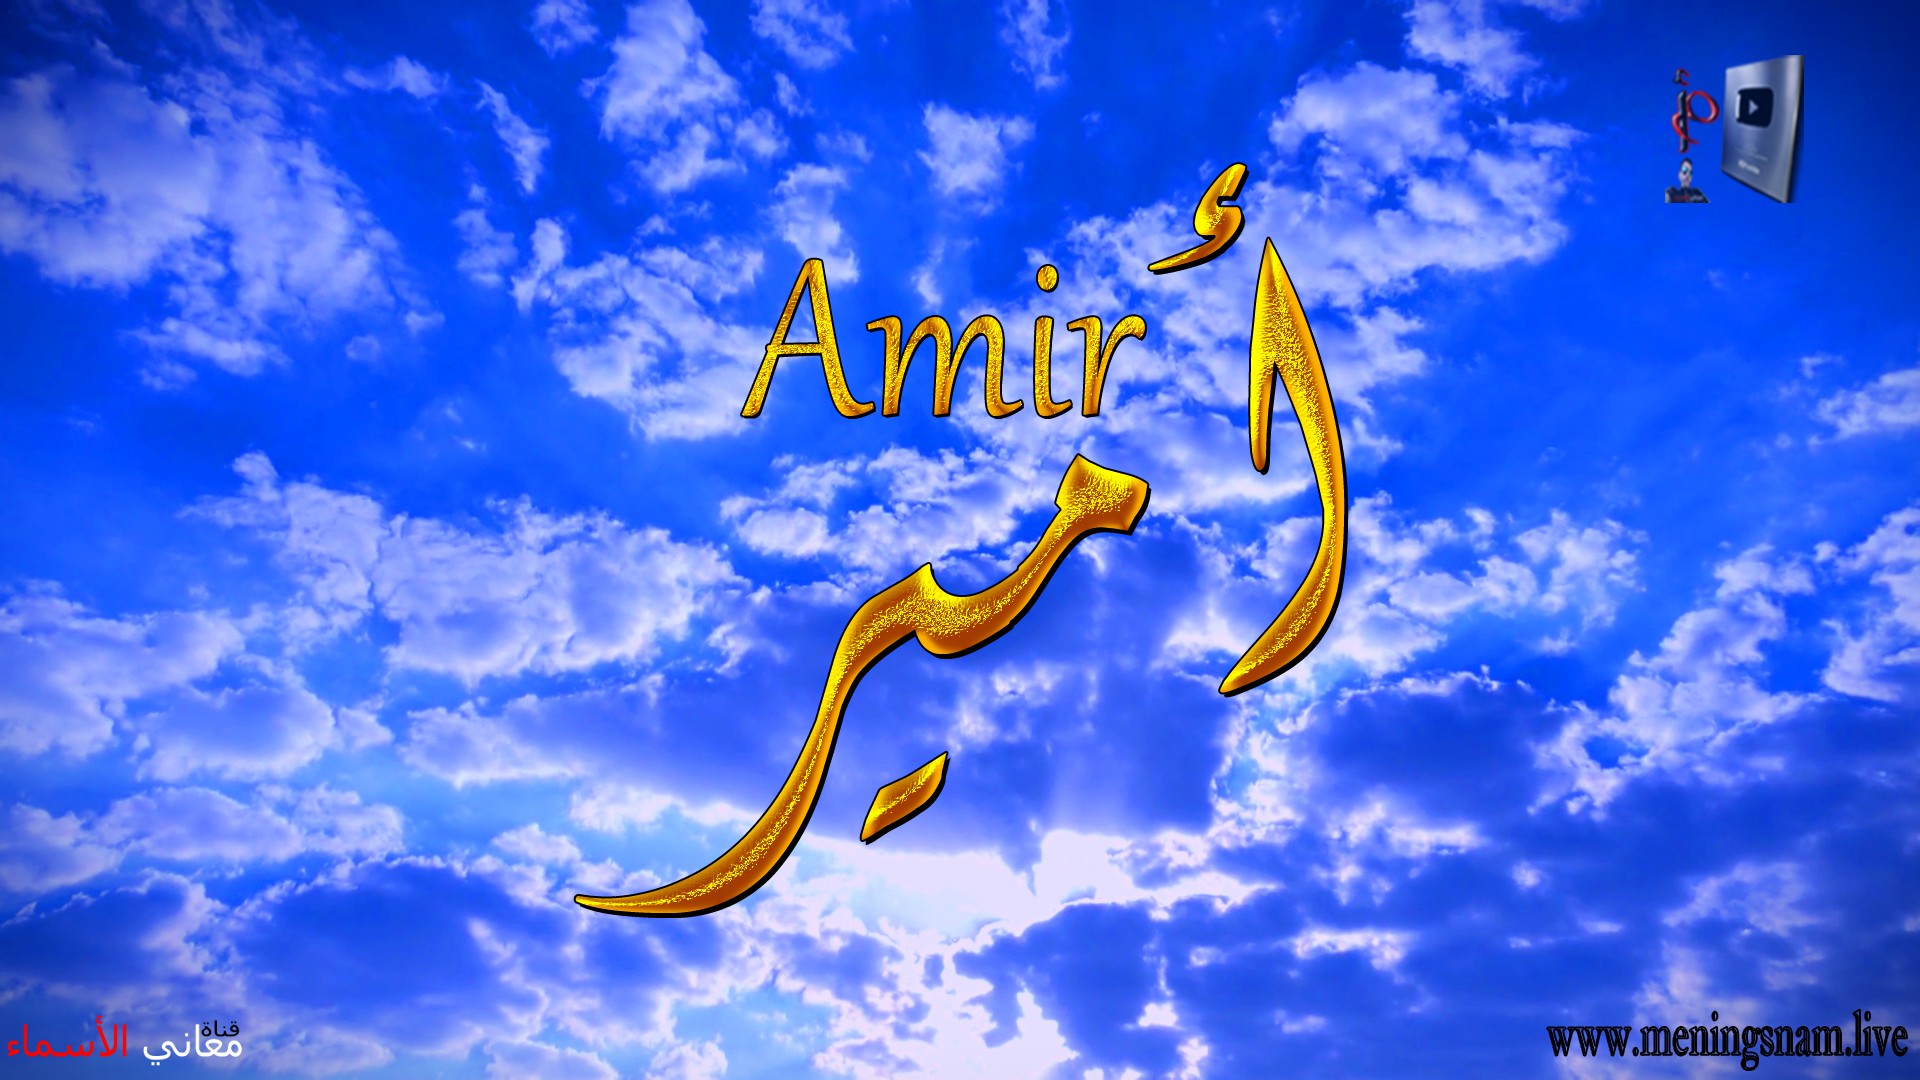 معنى اسم, أمير, وصفات, حامل, هذا الاسم, Amir,